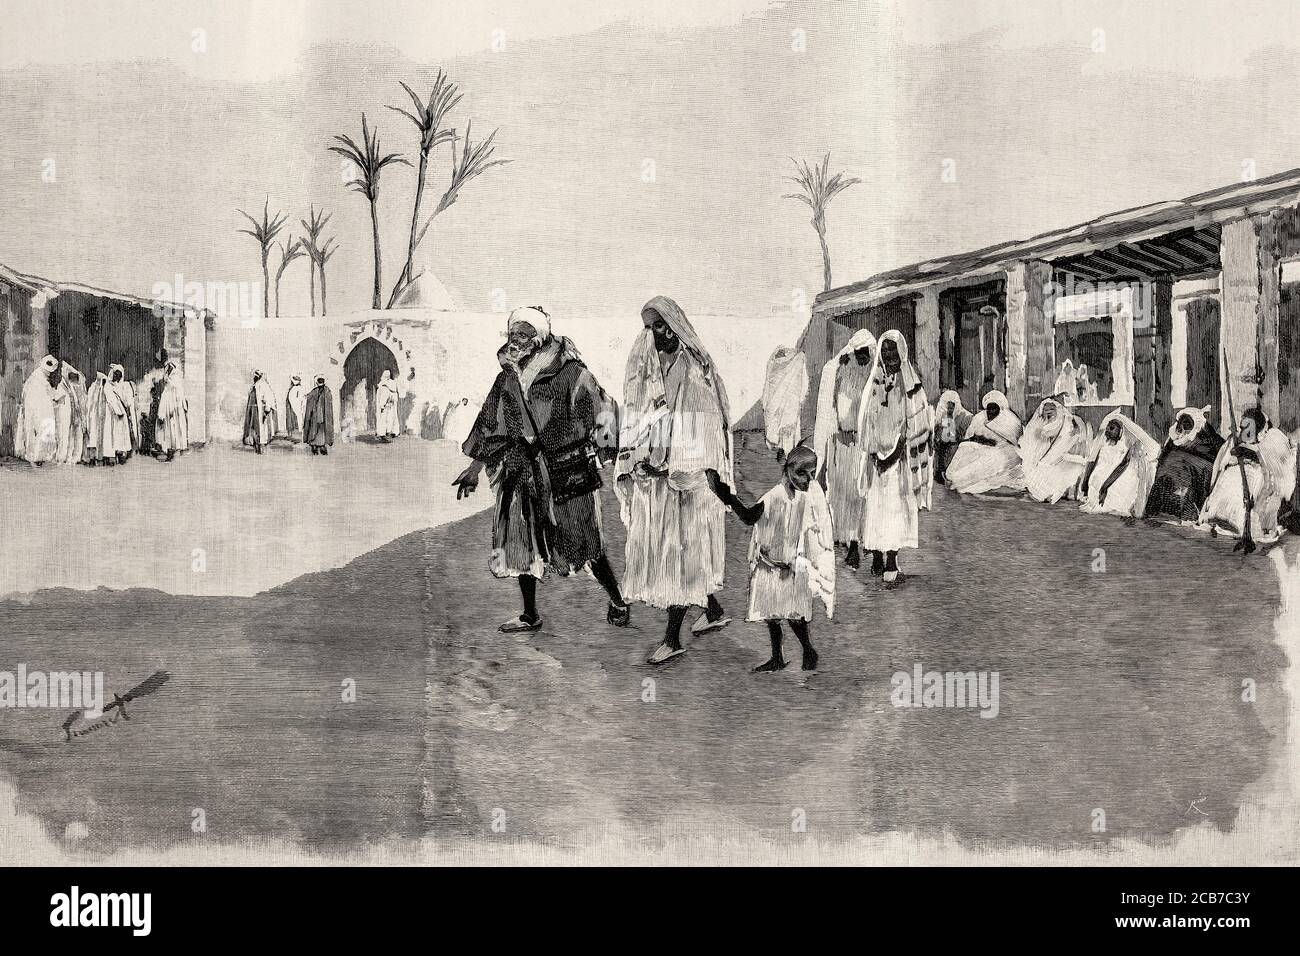 Le marché des esclaves à Marrakech, au Maroc. Illustration gravée de la Ilustracion Española y Americana datant du XIXe siècle 1894 Banque D'Images